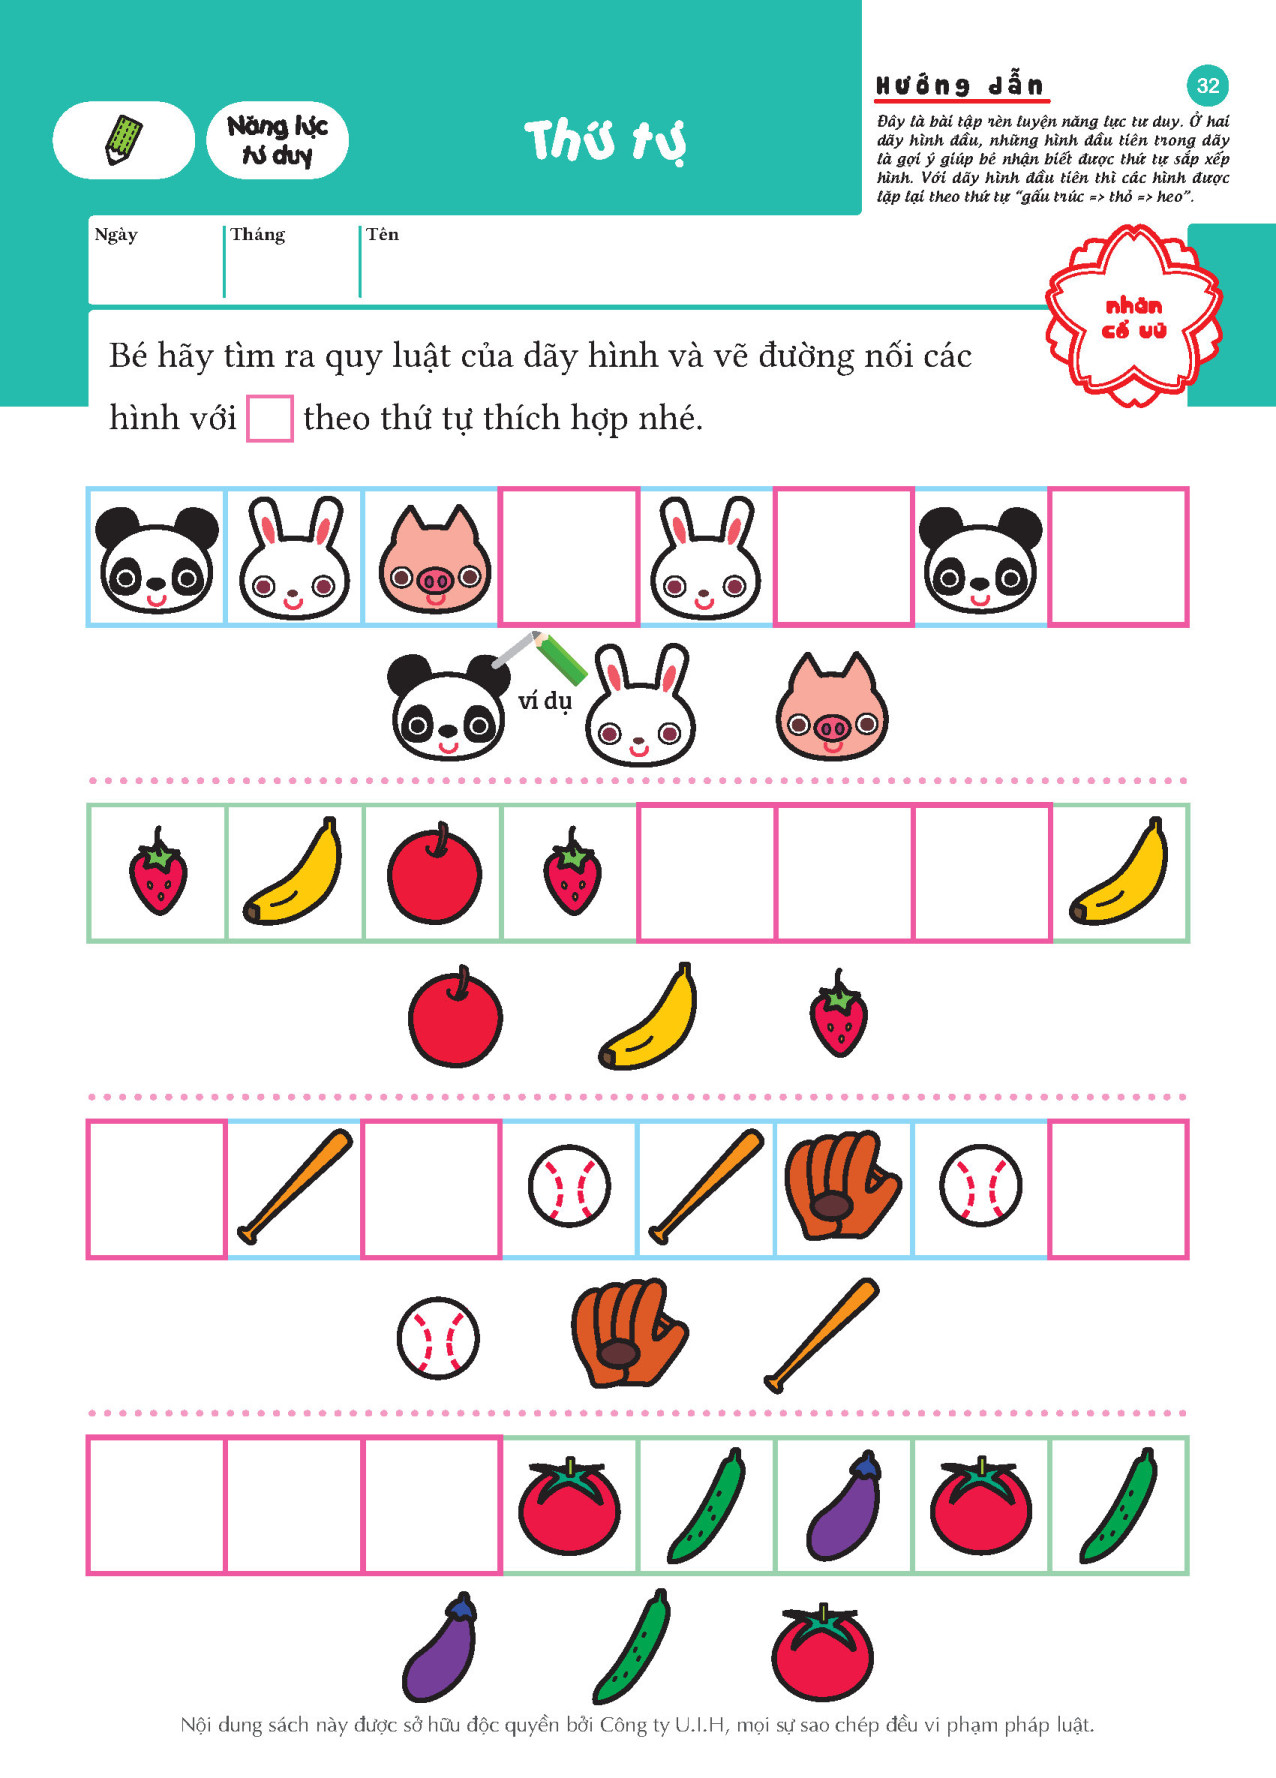 Tư duy (6~7 tuổi) - Giáo dục Nhật Bản - Bộ sách dành cho lứa tuổi nhi đồng - Thích hợp cho trẻ đã có thể thử sức với những bài tập hơi khó